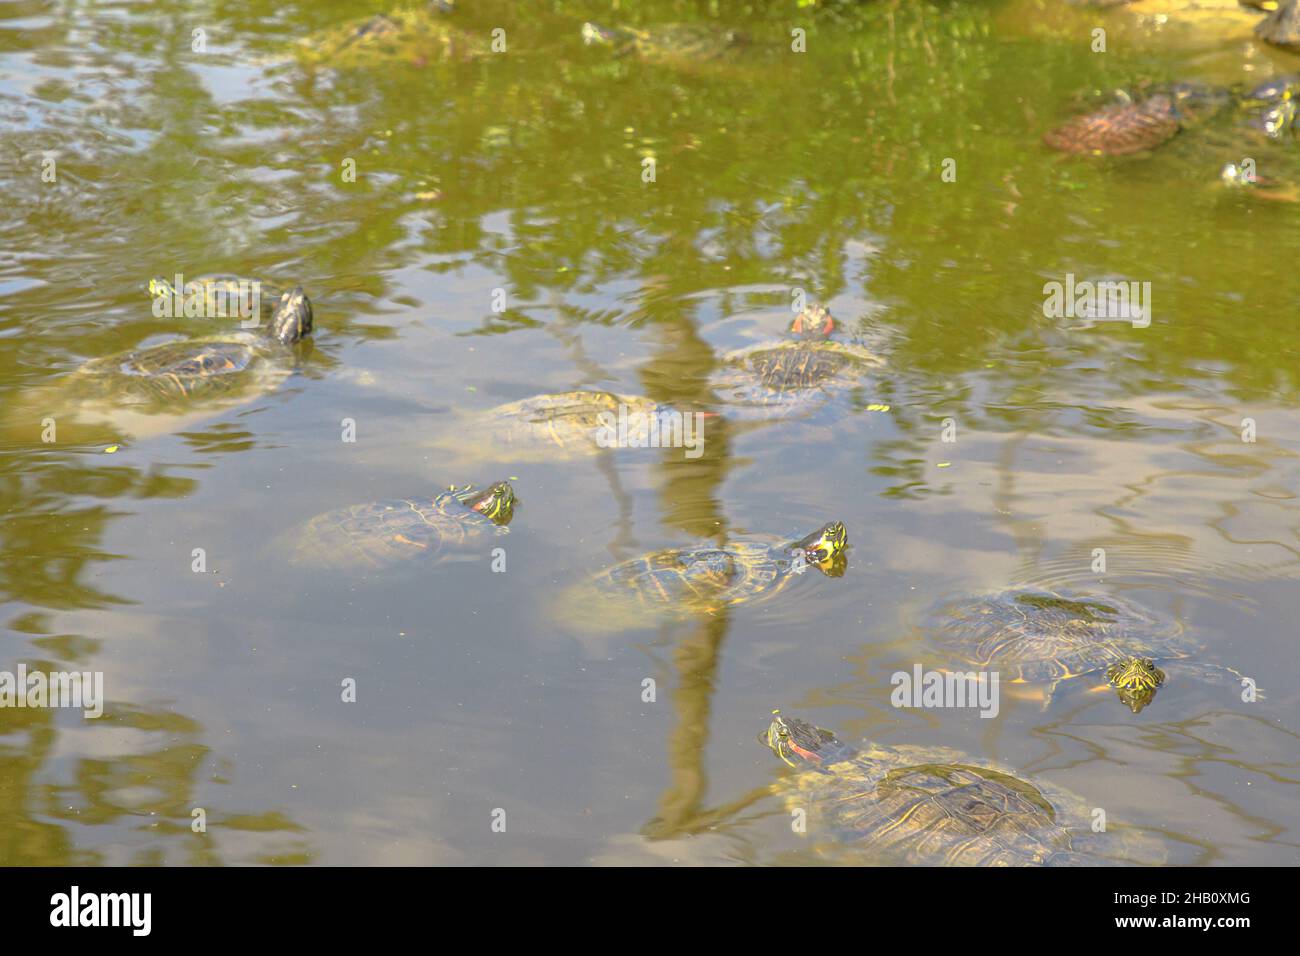 Die Trachemys scripta elegans der Familie Emydidae schwimmende Rotohrschildkröte in einem Teich. Erwachsene von beliebten Haustier Schildkröte in den Vereinigten Staaten. Nativ in Stockfoto